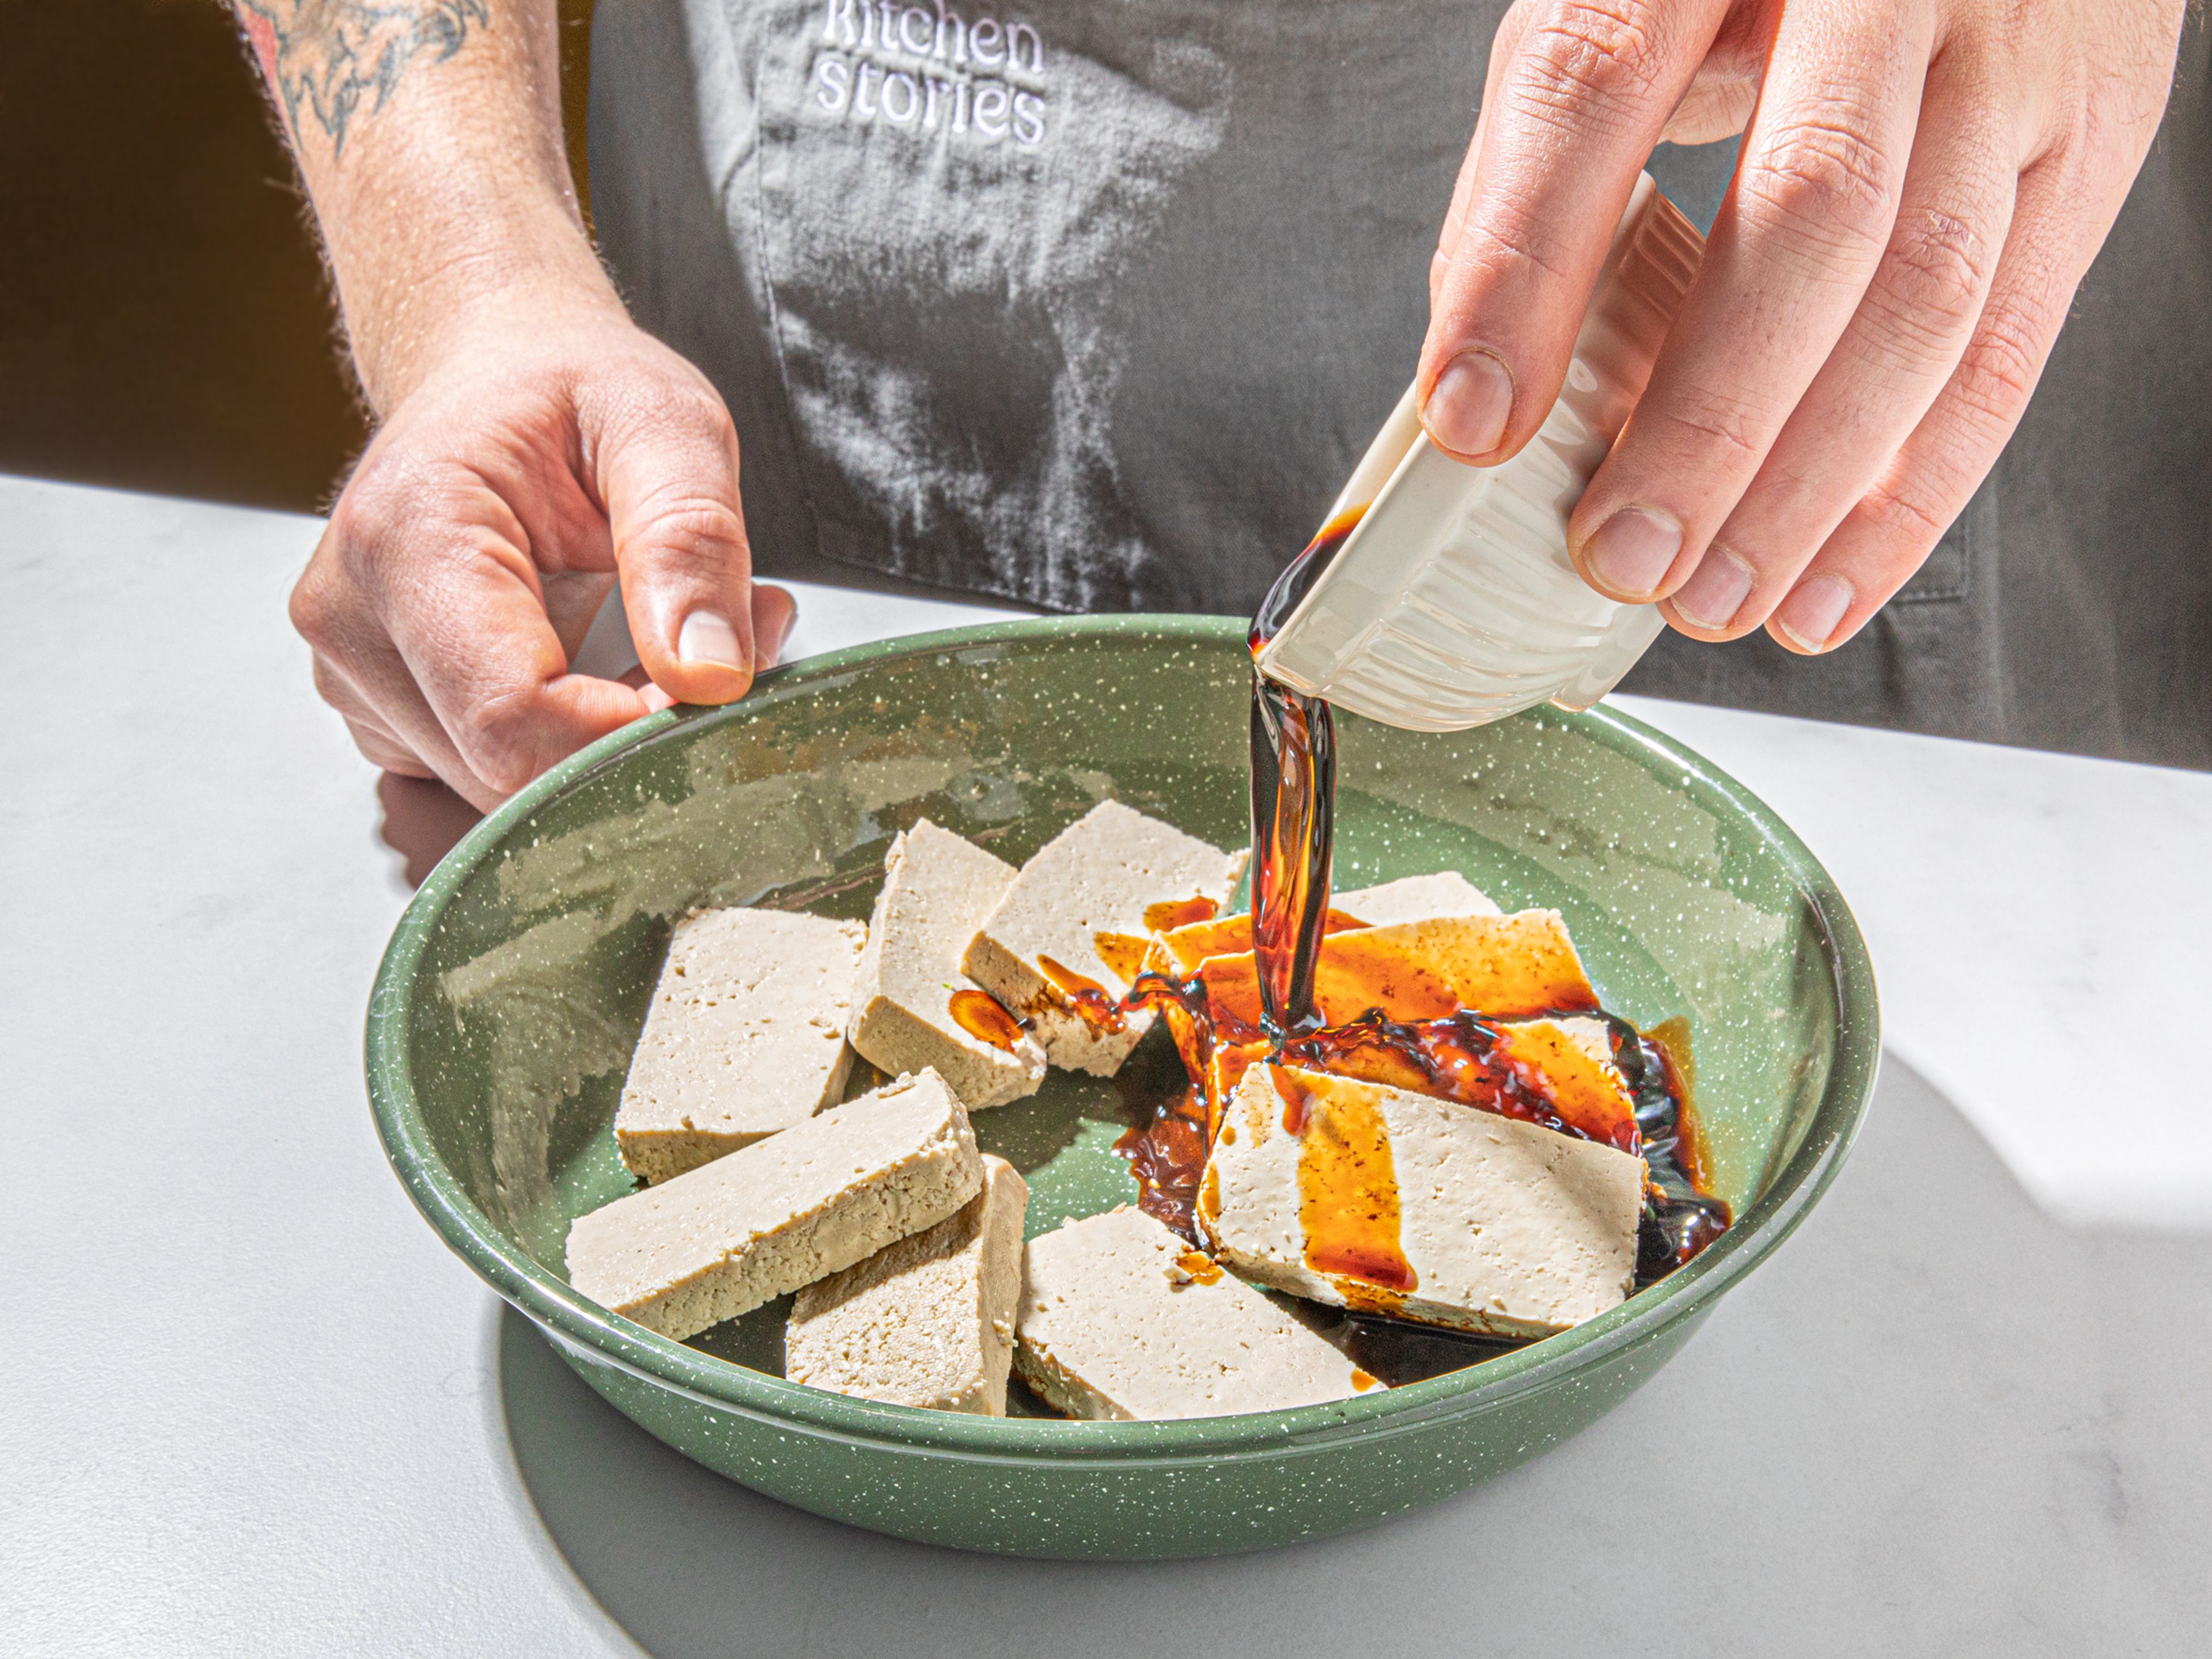 Tofu mit Küchenpapier trocken tupfen und in ca. 2 cm dicke Streifen schneiden. Balsamicoessig, Sojasauce, unsere TOFU LOVER GEWÜRZMISCHUNG (falls verwendet) und eine Prise Zucker in eine Schüssel geben und verquirlen. Den geschnittenen Tofu auf einen tiefen Teller legen und die Essig-Soja-Mischung darüber gießen. Mit Frischhaltefolie abdecken, in den Kühlschrank stellen und mindestens 30 Min. oder bis zu 8 Std. marinieren lassen.